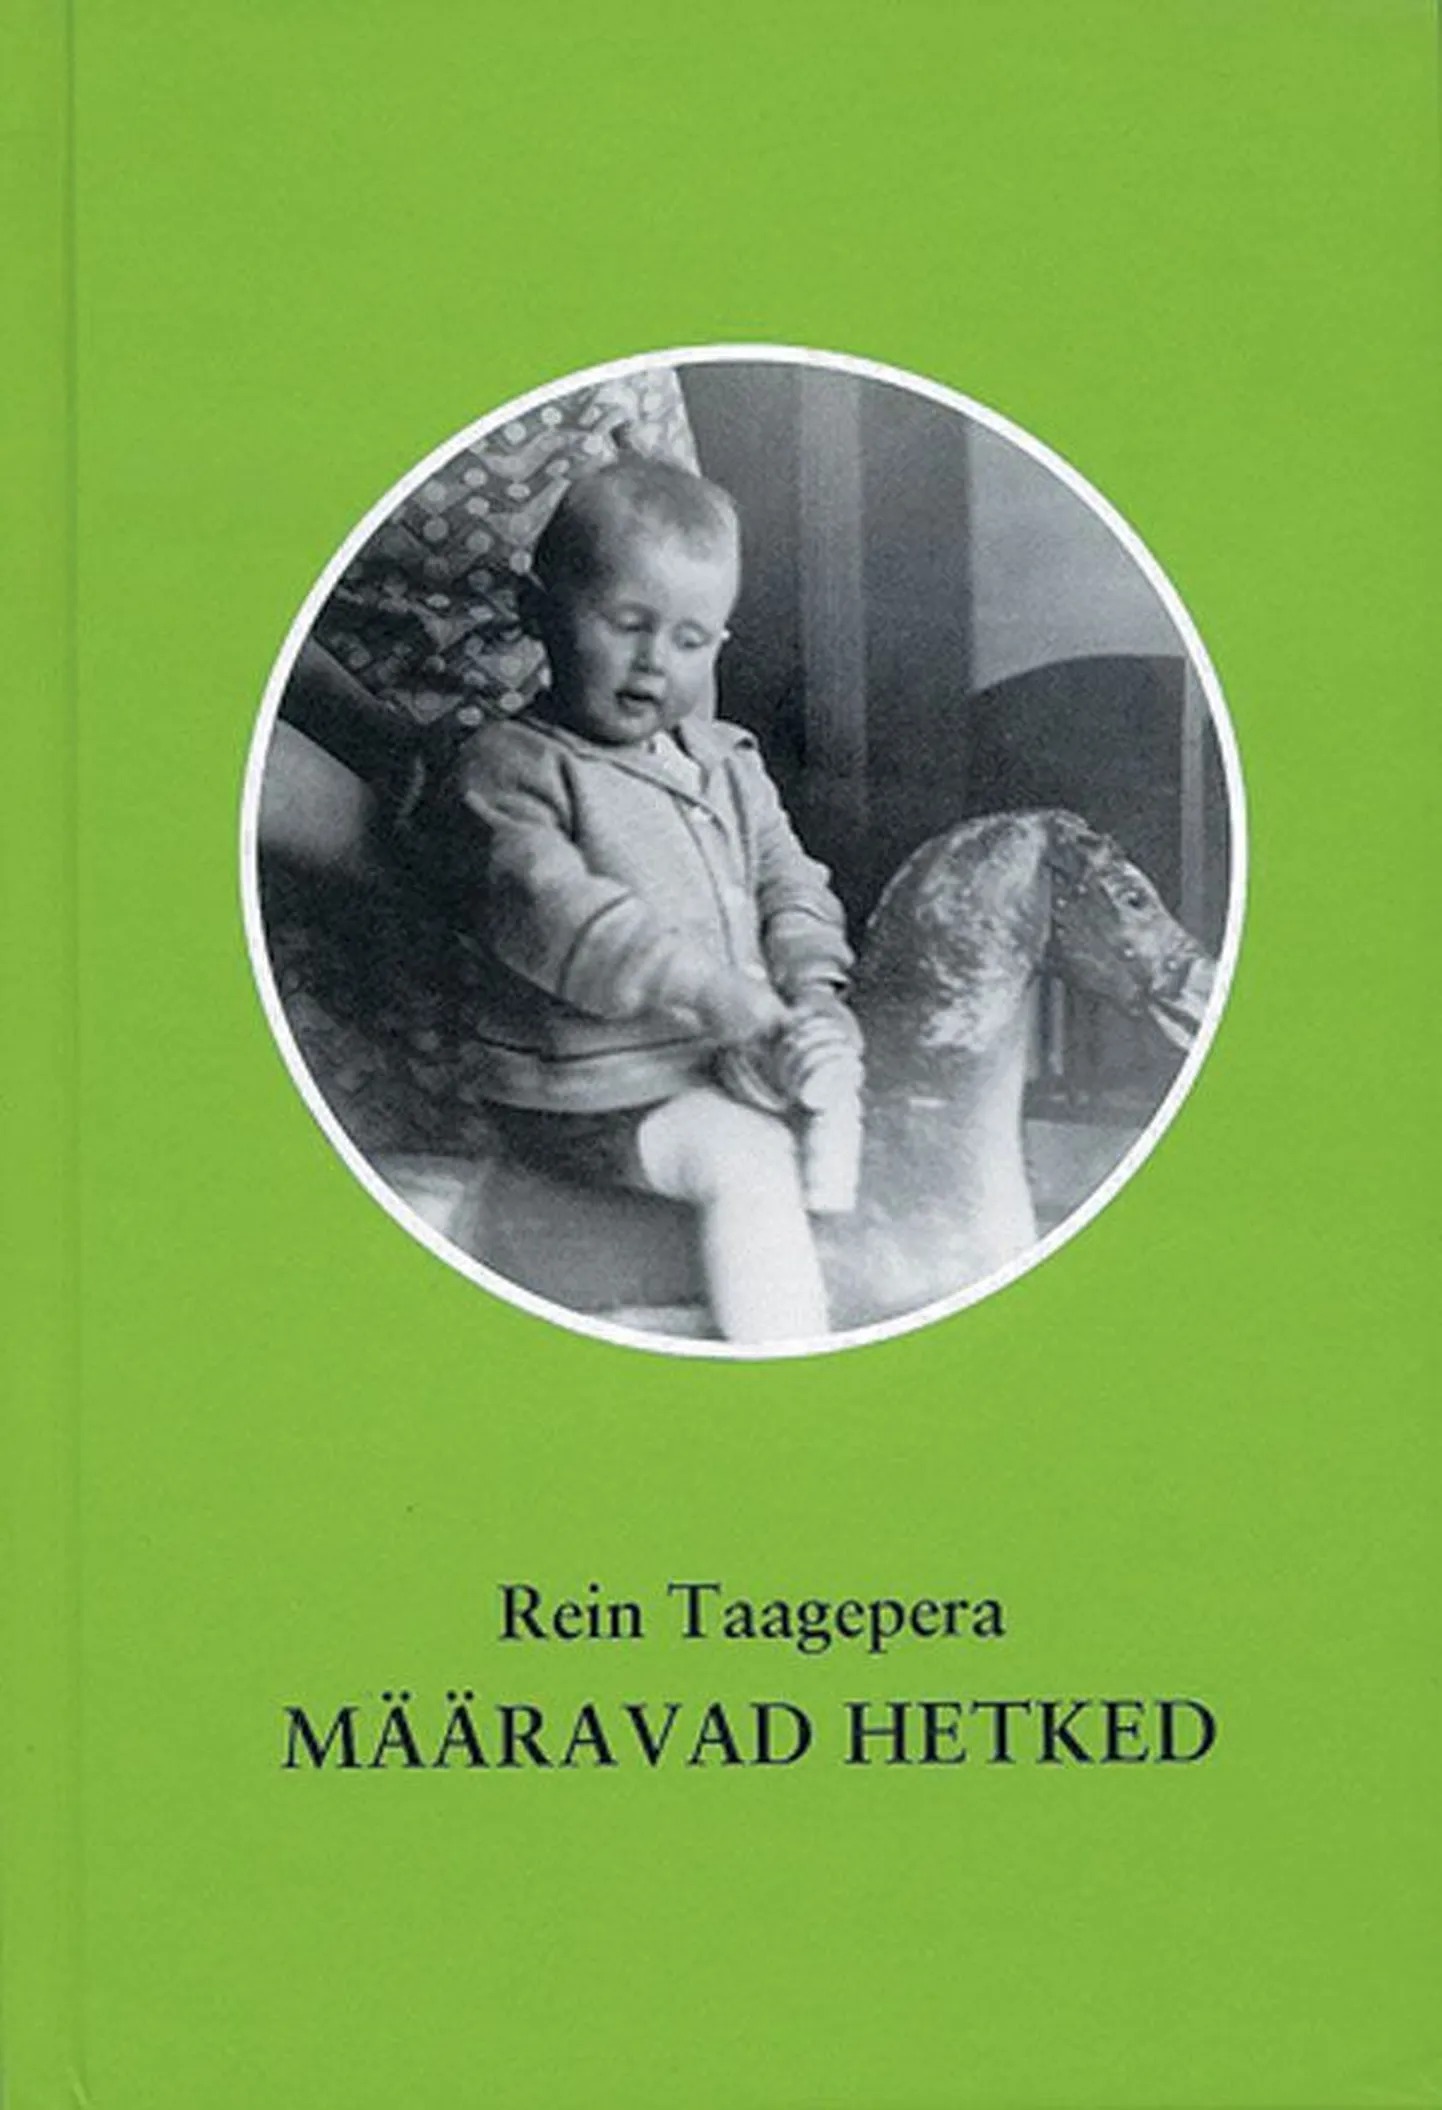 Rein Taagepera, «Määravad hetked. Mälestusi aastani 1960», fotod autori kogust, raamat sarjast «Palju aastaid», Ilmamaa, Tartu 2012, 650 lk.